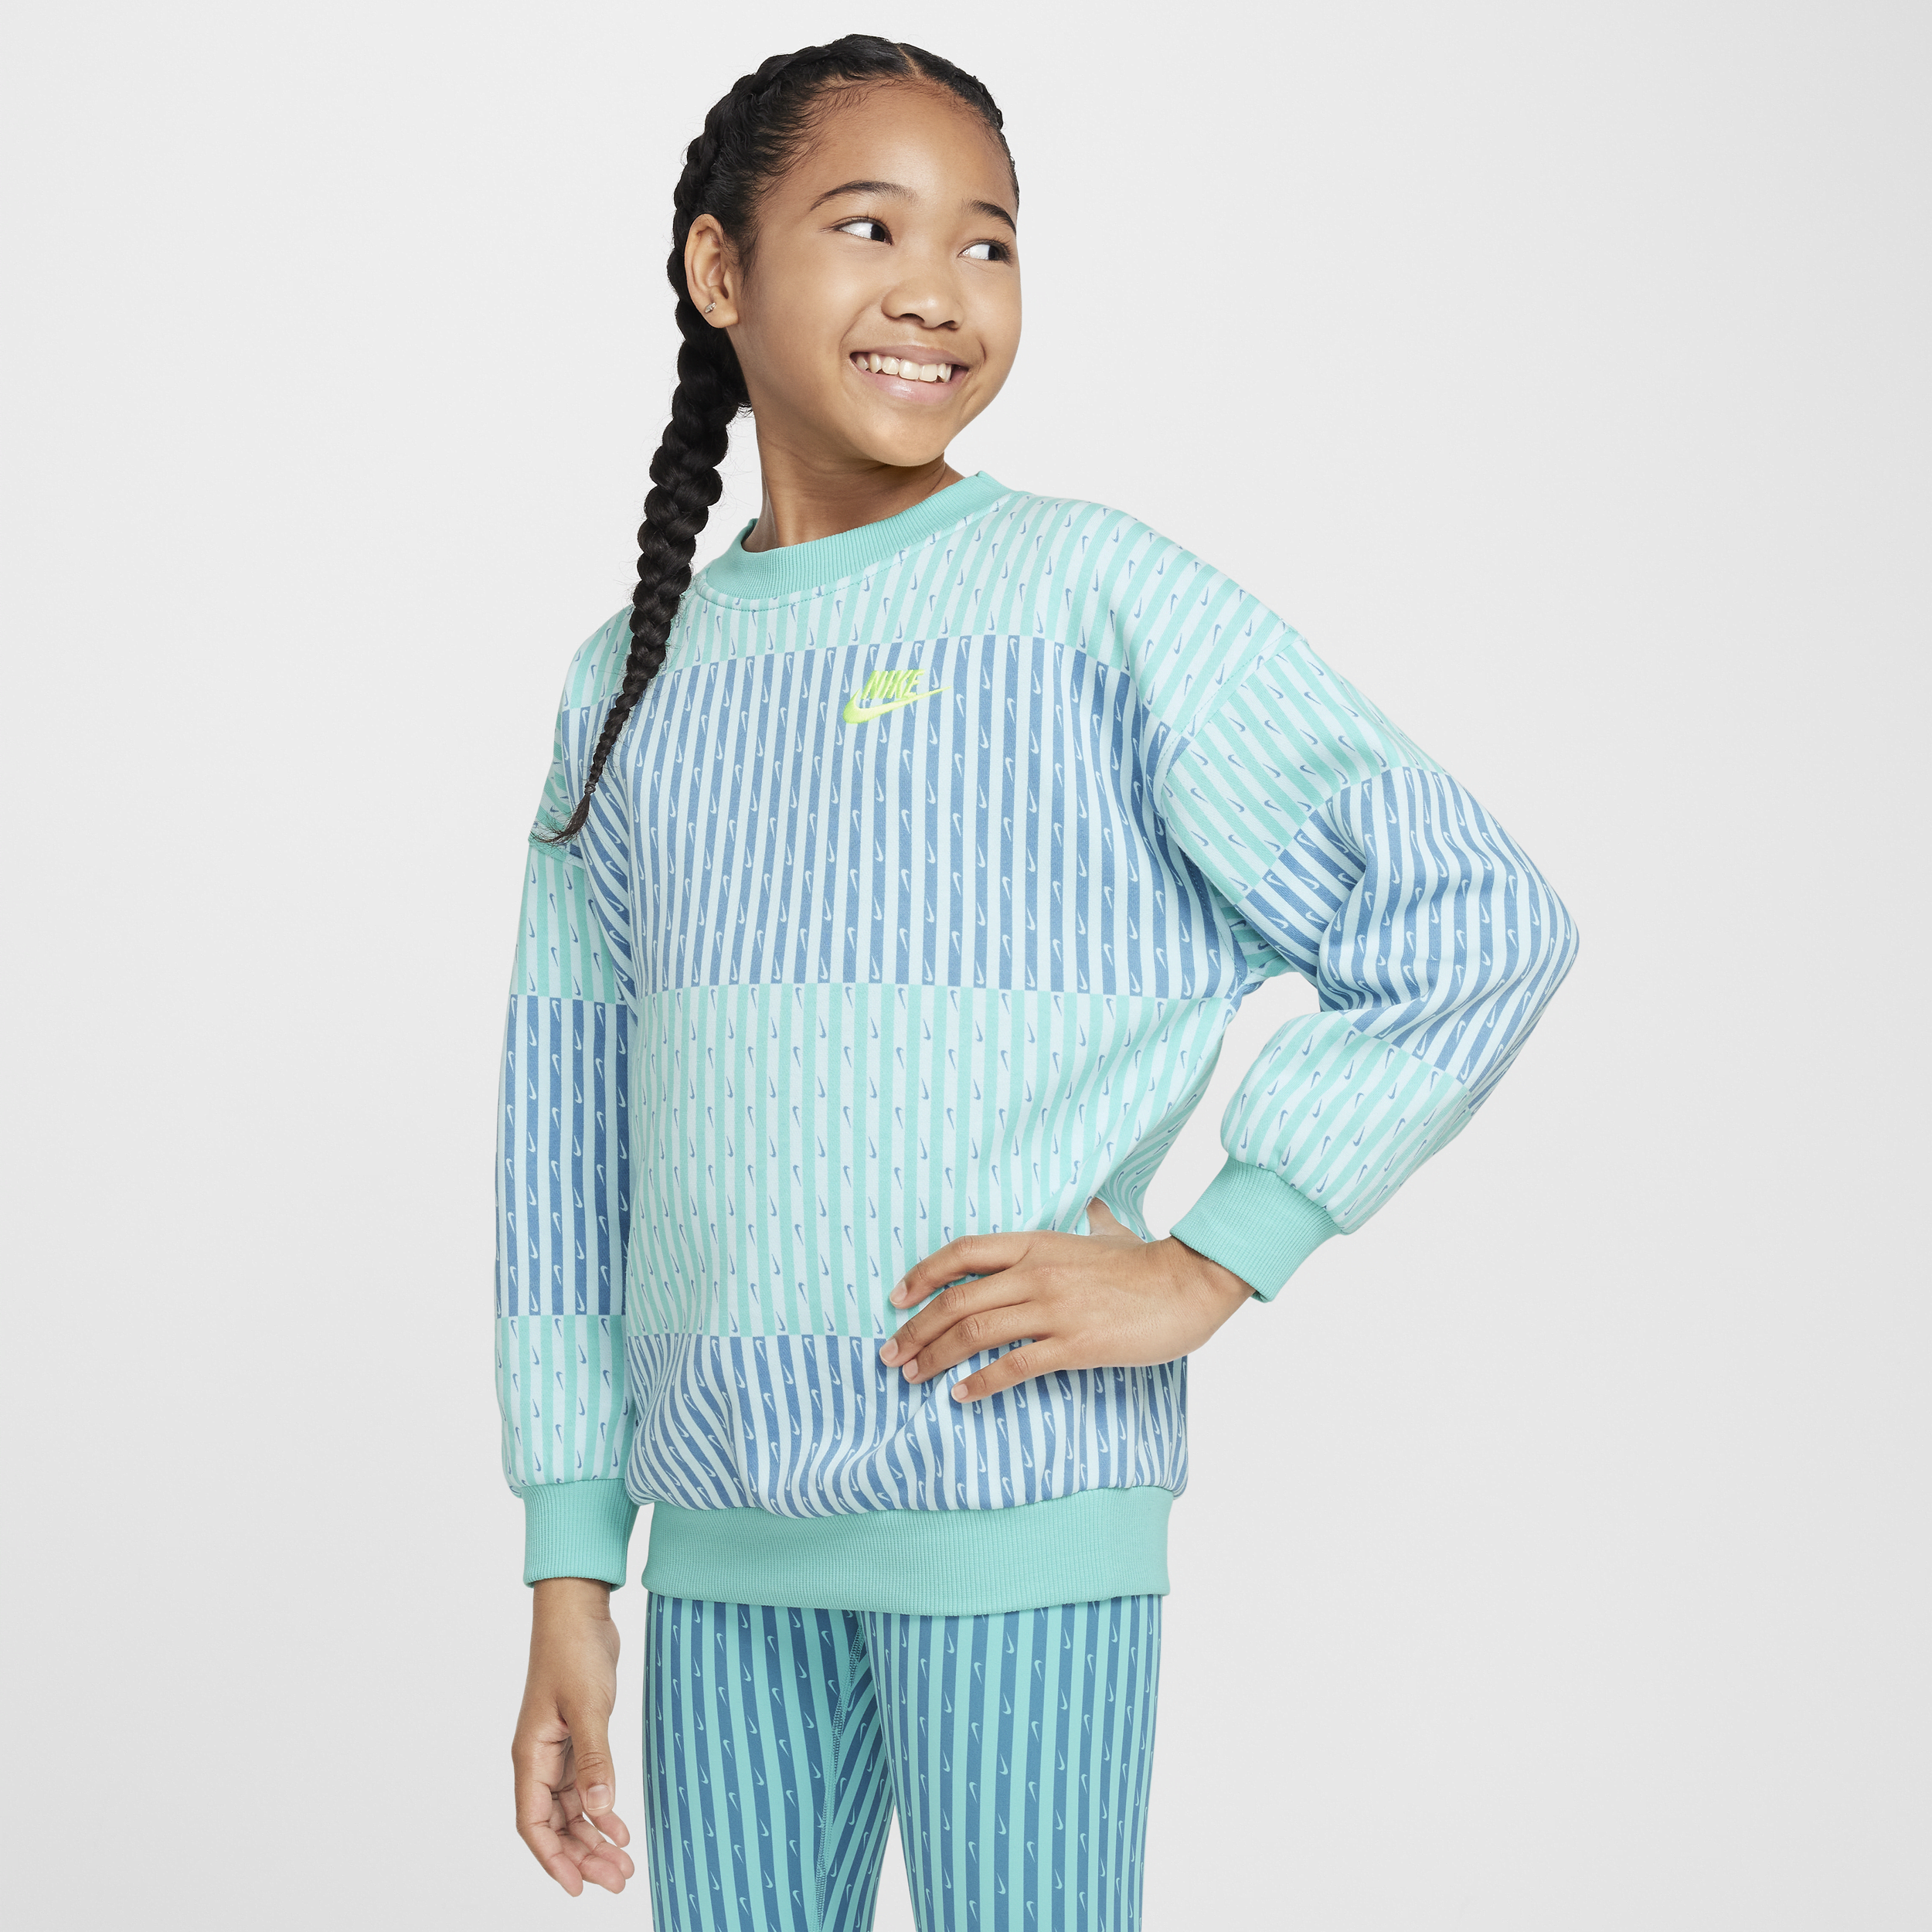 Nike Sportswear Club Fleece oversized sweatshirt voor meisjes - Groen